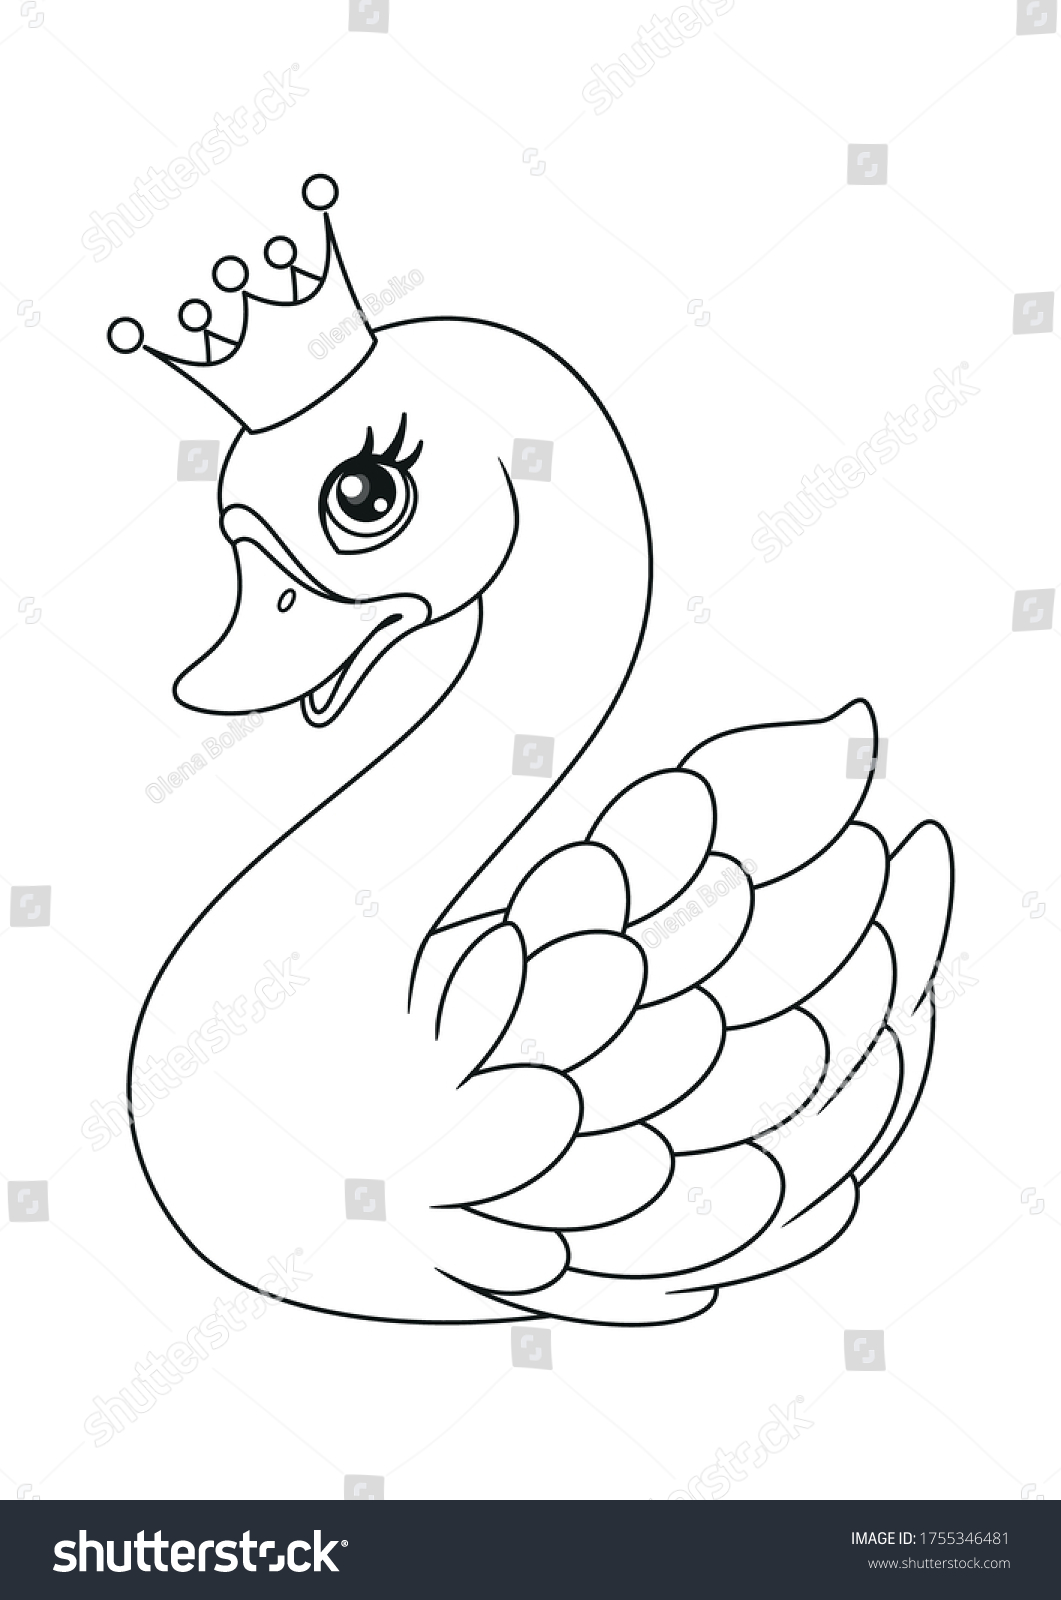 Лебедь с короной на голове раскраска